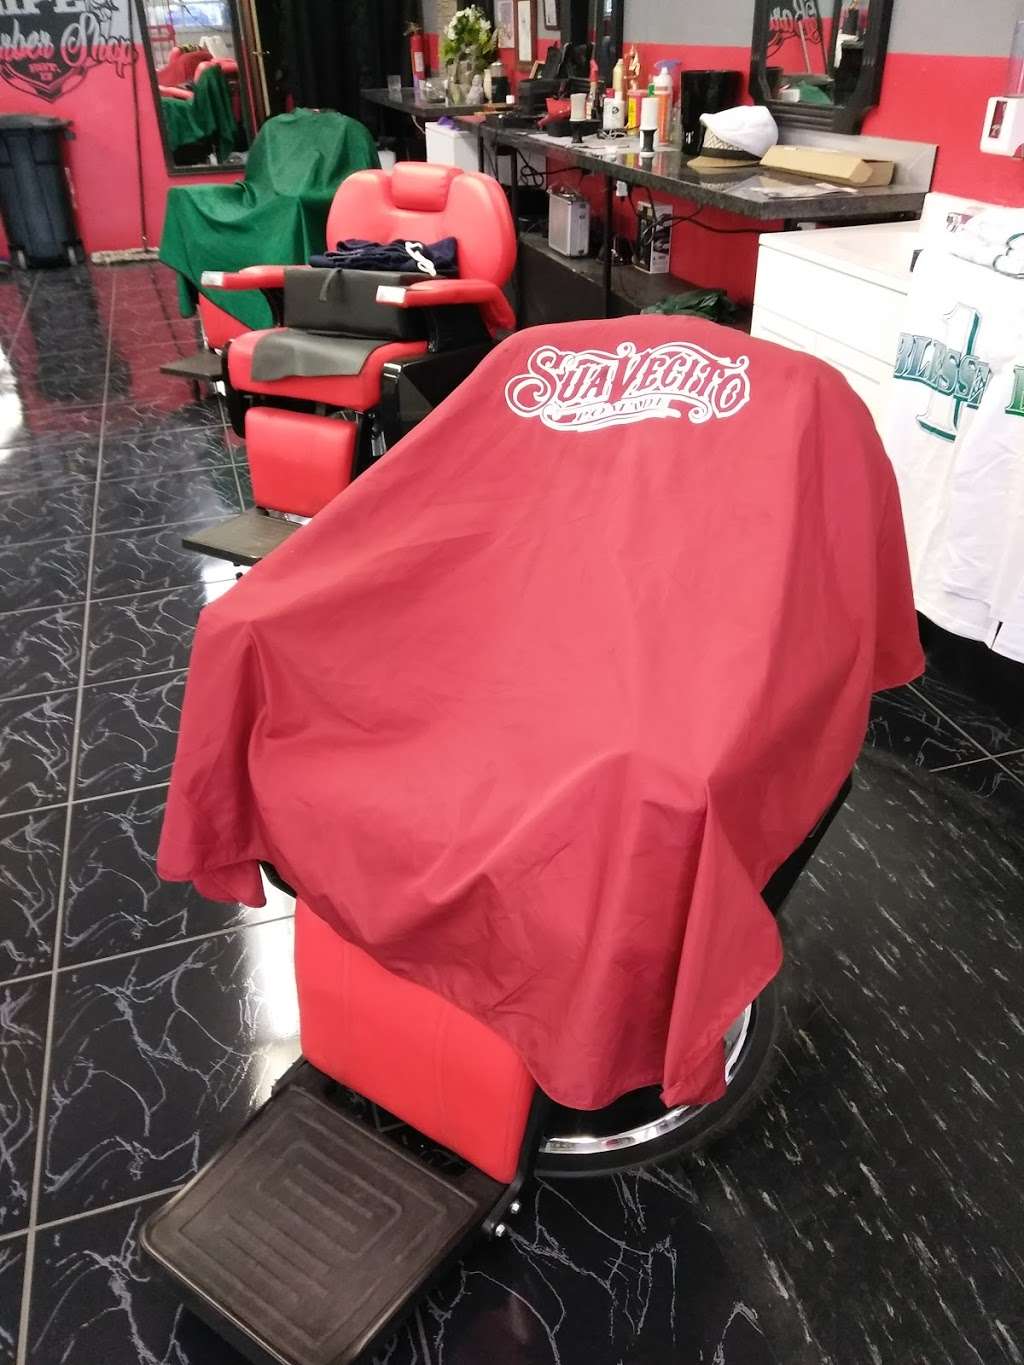 Way Of Life Barber Shop | 1000 N Nellis Blvd, Las Vegas, NV 89110 | Phone: (702) 531-8533